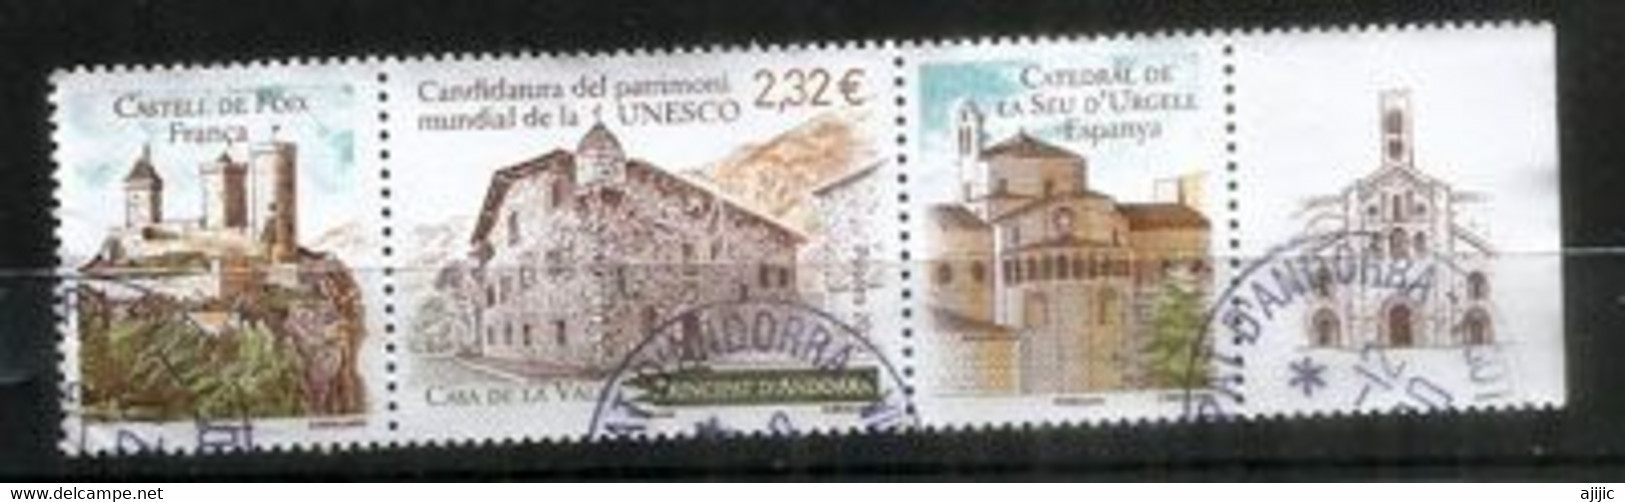 UNESCO.ANDORRA-FRANCE-ESPAGNE (Candidature) Chateau De Foix,Cathedrale Seo Urgell,Casa De La Vall,oblitéré - Used Stamps